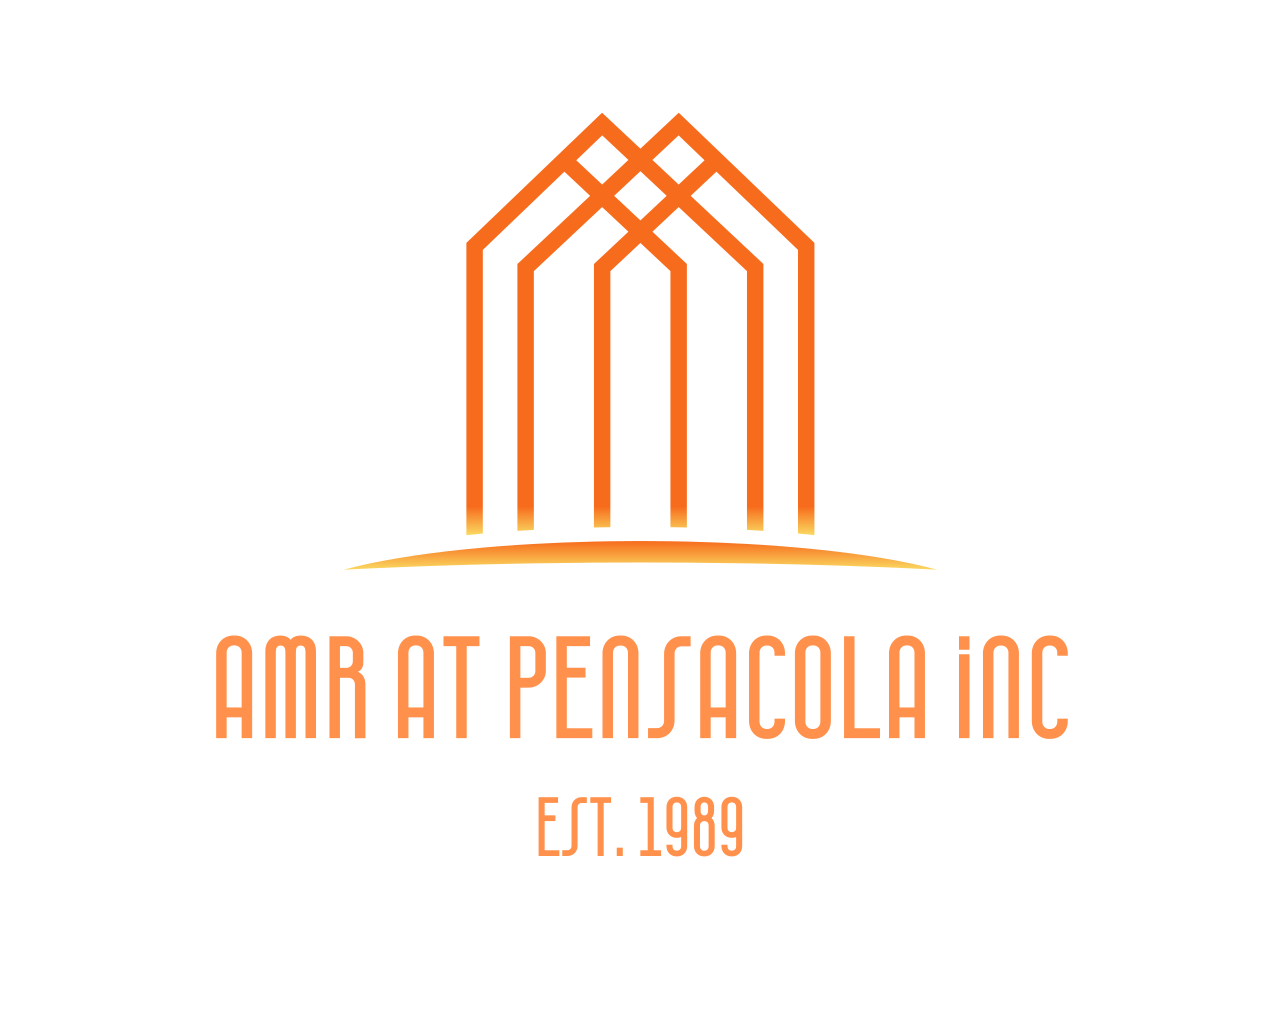 AMR at Pensacola, Inc.